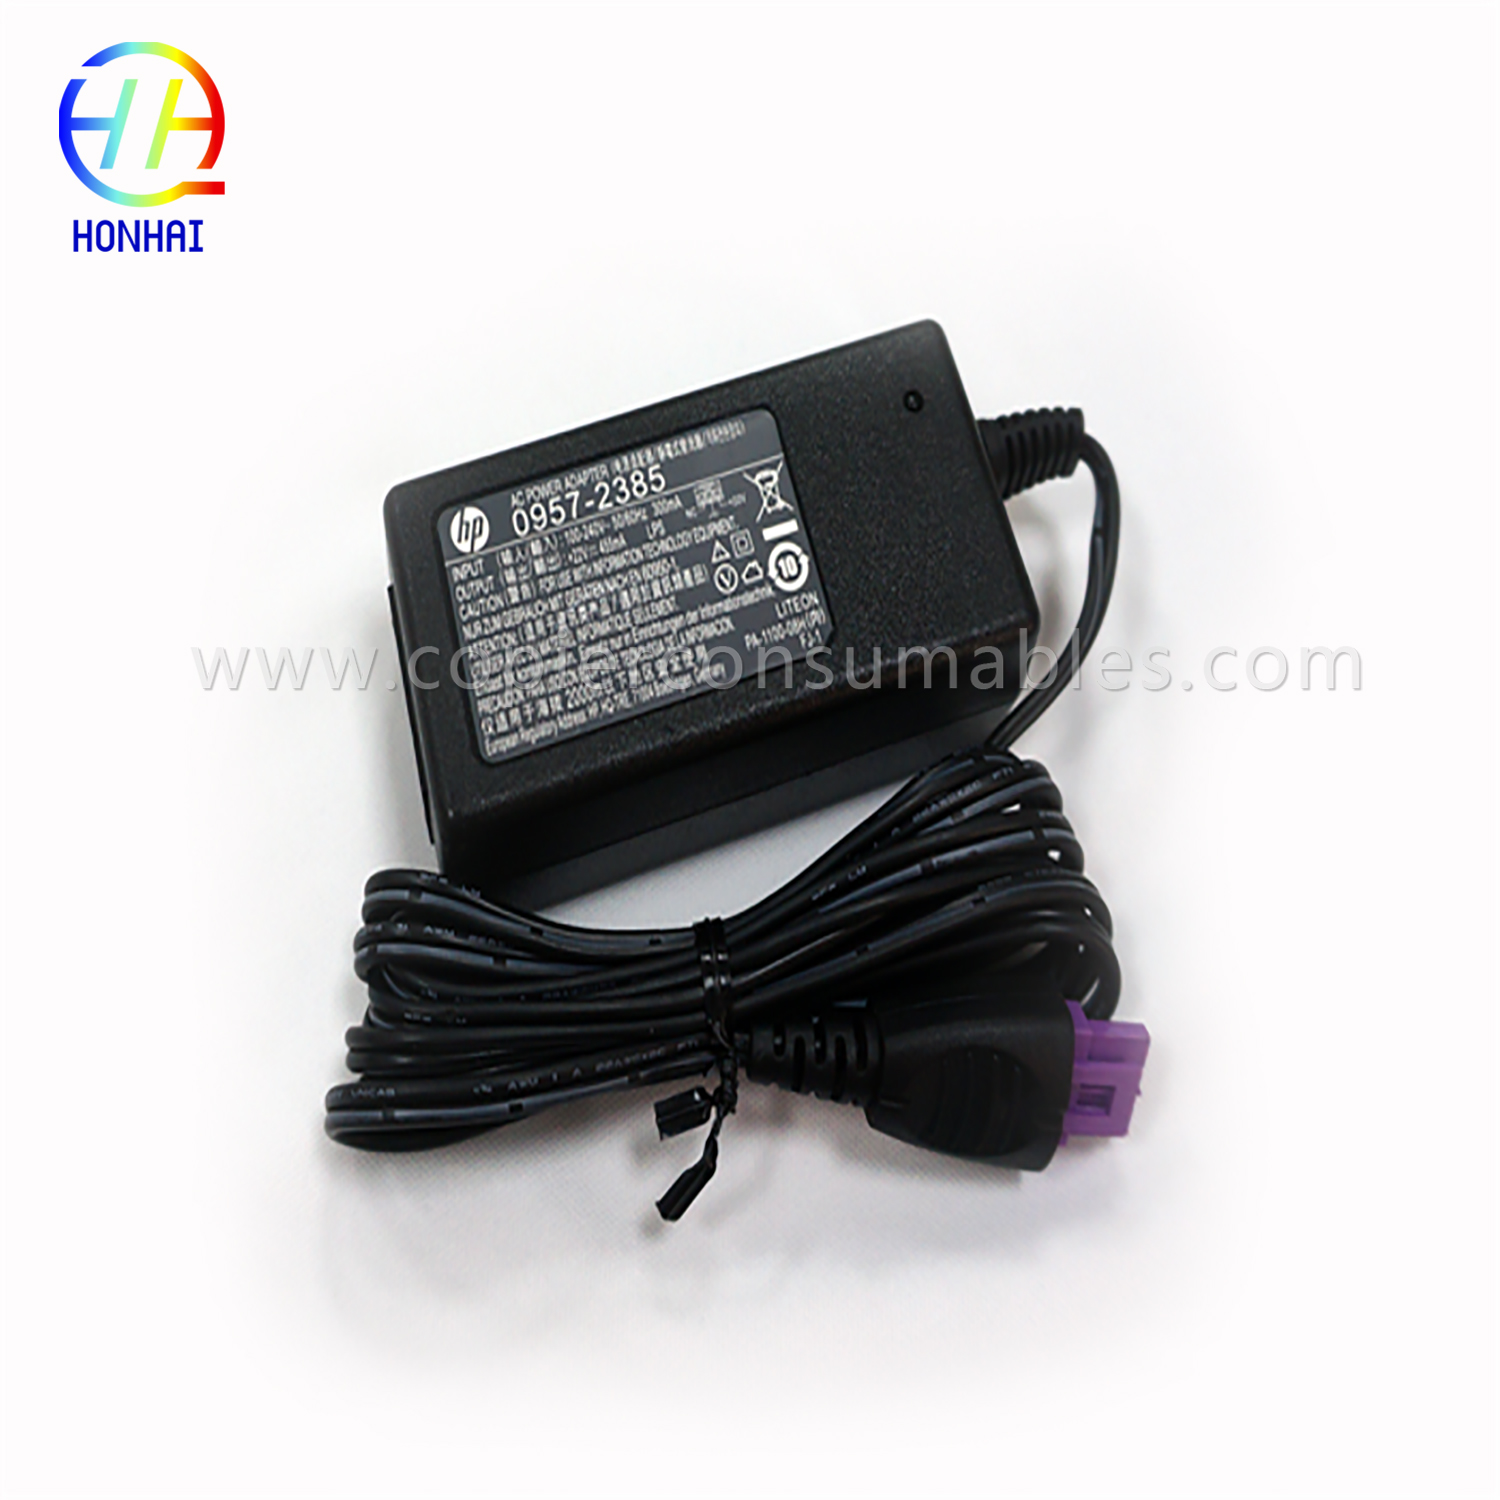 Power Adapter HP 1010 1510 1518-3 22v拷贝 (1)